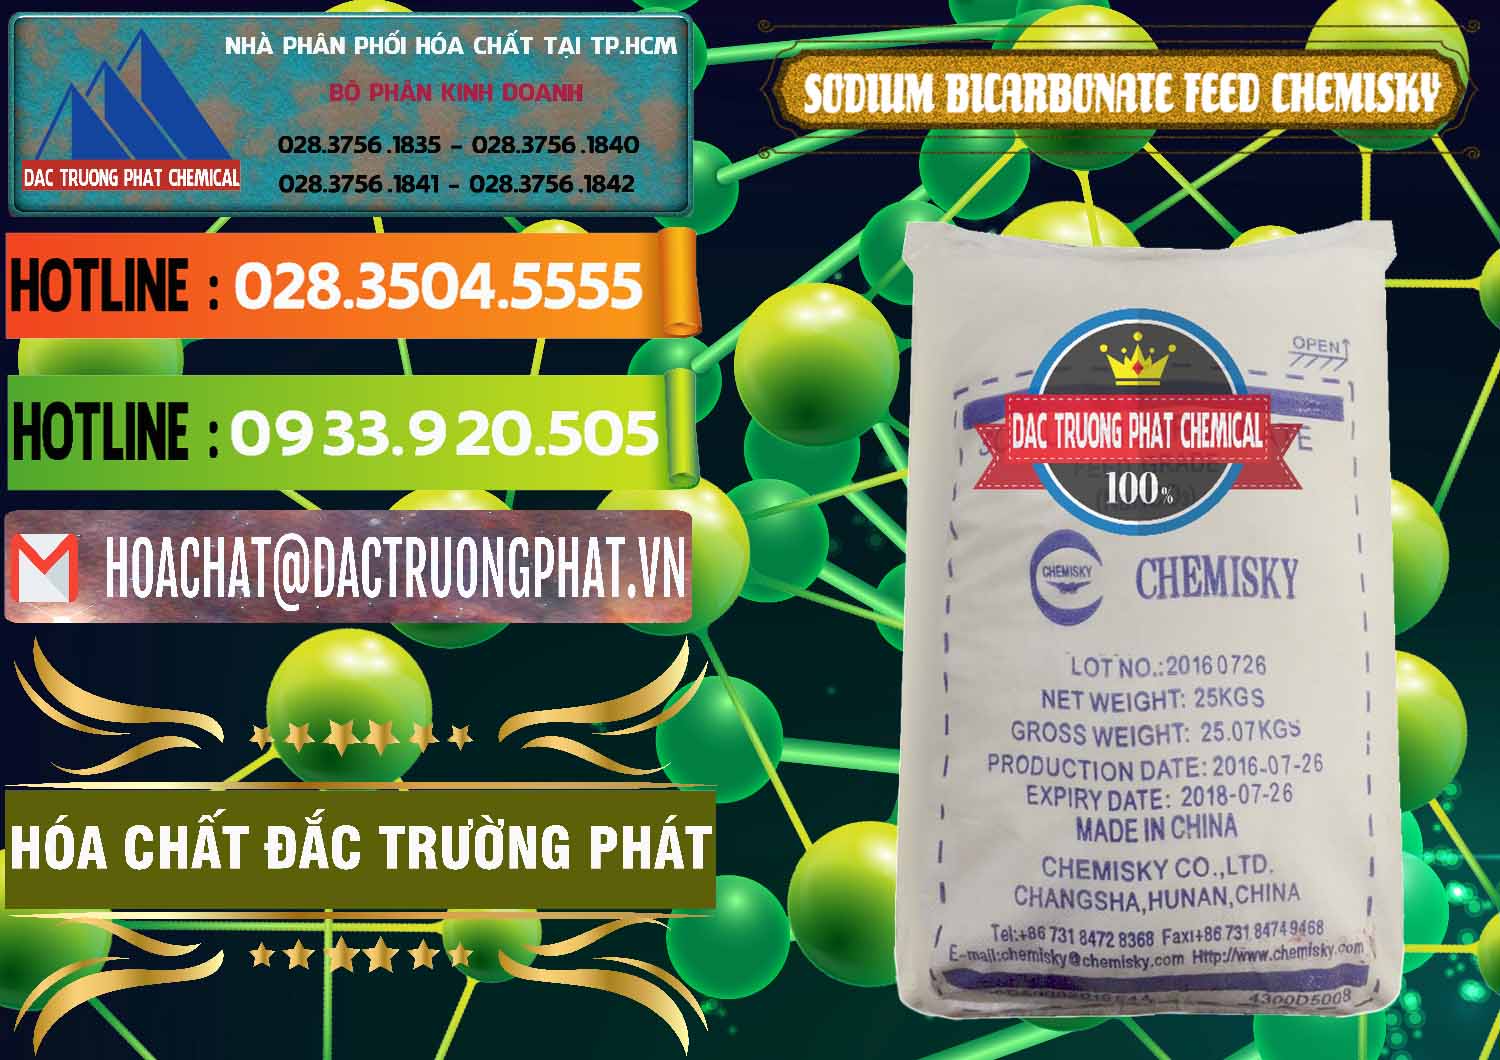 Cty chuyên kinh doanh ( bán ) Sodium Bicarbonate – Bicar NaHCO3 Feed Grade Chemisky Trung Quốc China - 0264 - Cty phân phối - cung ứng hóa chất tại TP.HCM - cungcaphoachat.com.vn